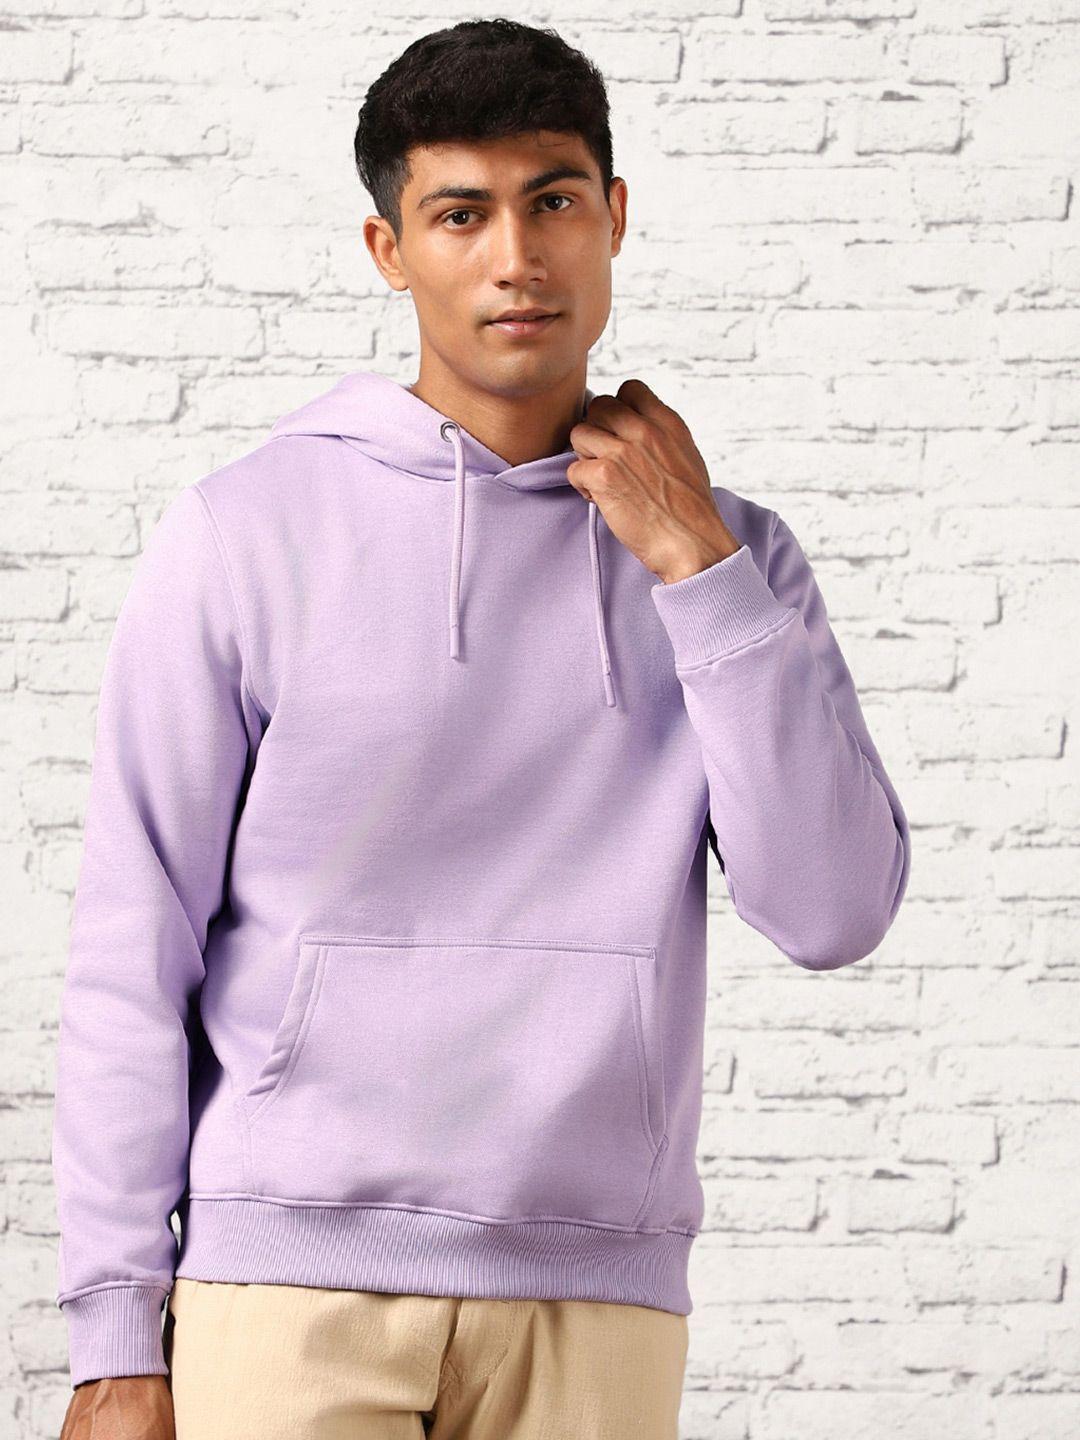 nobero-hooded-pullover-sweatshirt